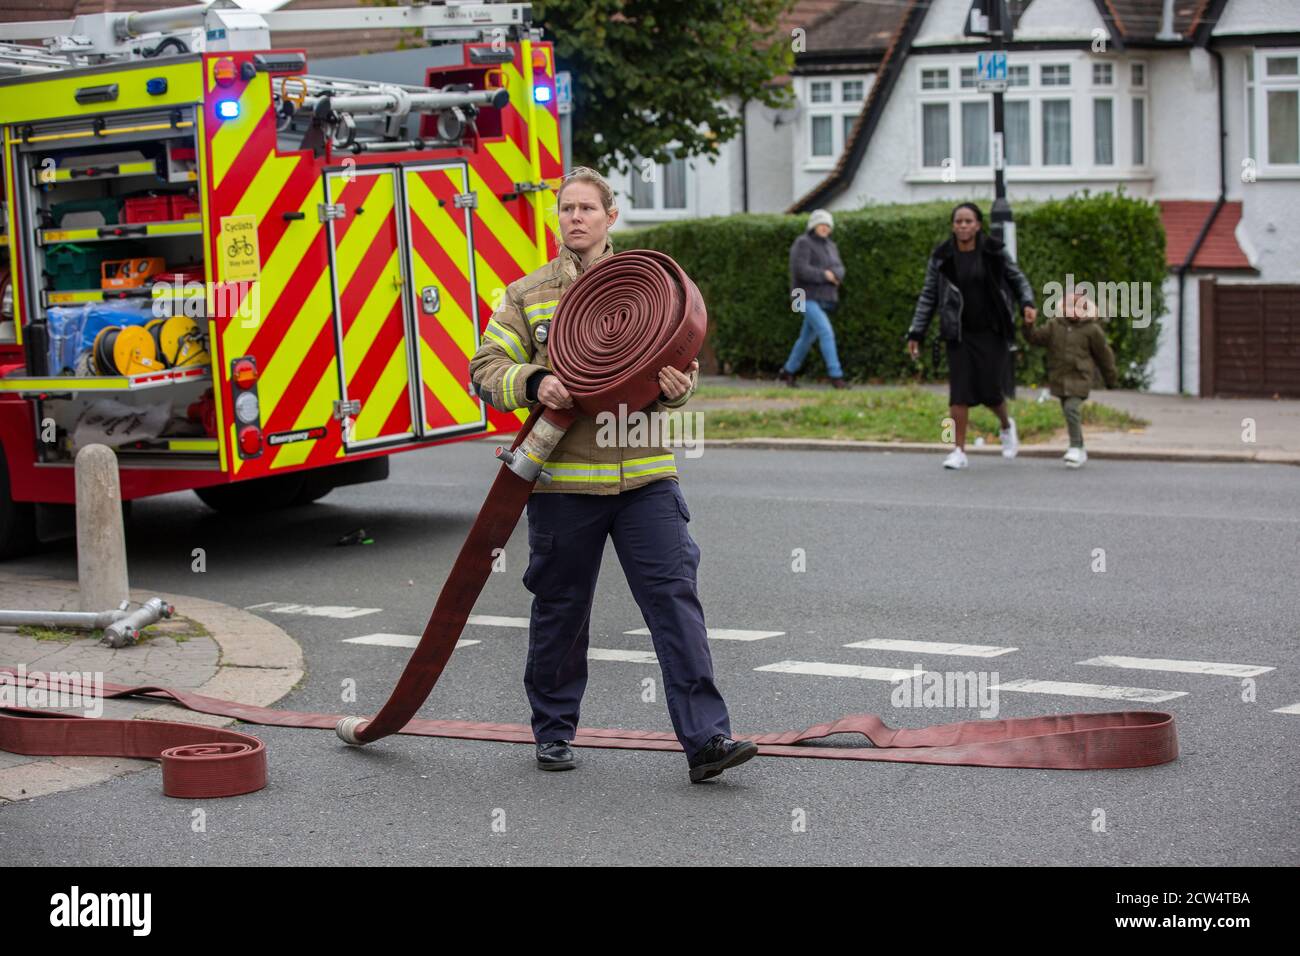 Une pompier lance le tuyau avec la brigade de pompiers de Londres pour assister à un incendie de maison dans une rue résidentielle, sud de Londres, Angleterre, Royaume-Uni Banque D'Images